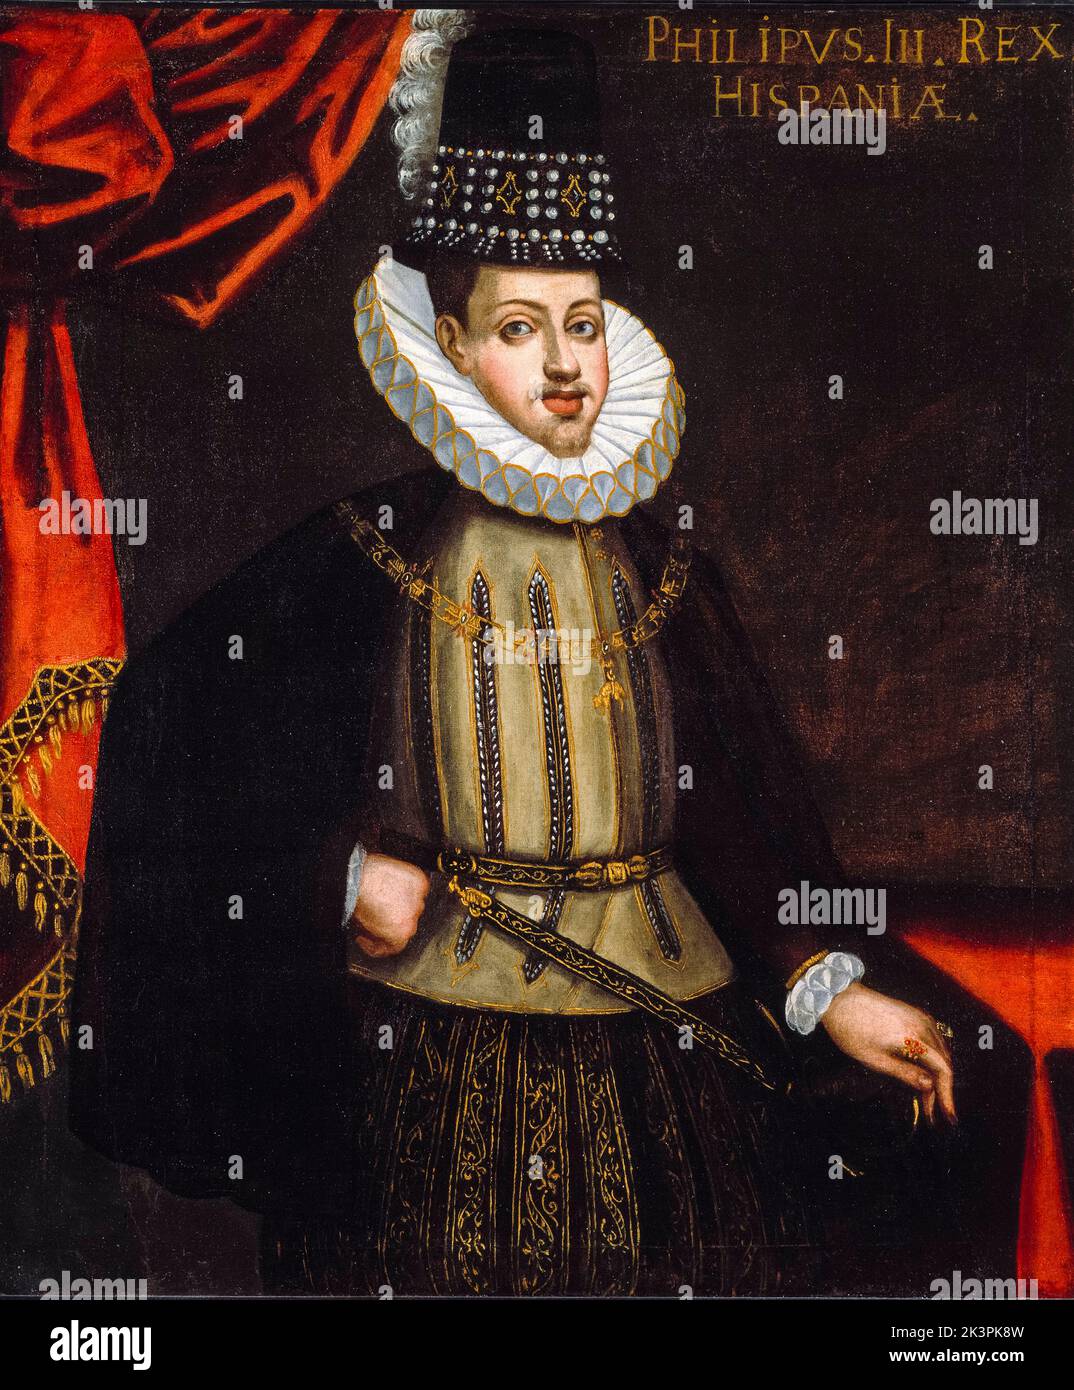 Philipp III. (1578-1621), König von Spanien, (1598-1621), Porträt in Öl auf Leinwand von einem Künstler der spanischen Schule, 1590-1600 Stockfoto